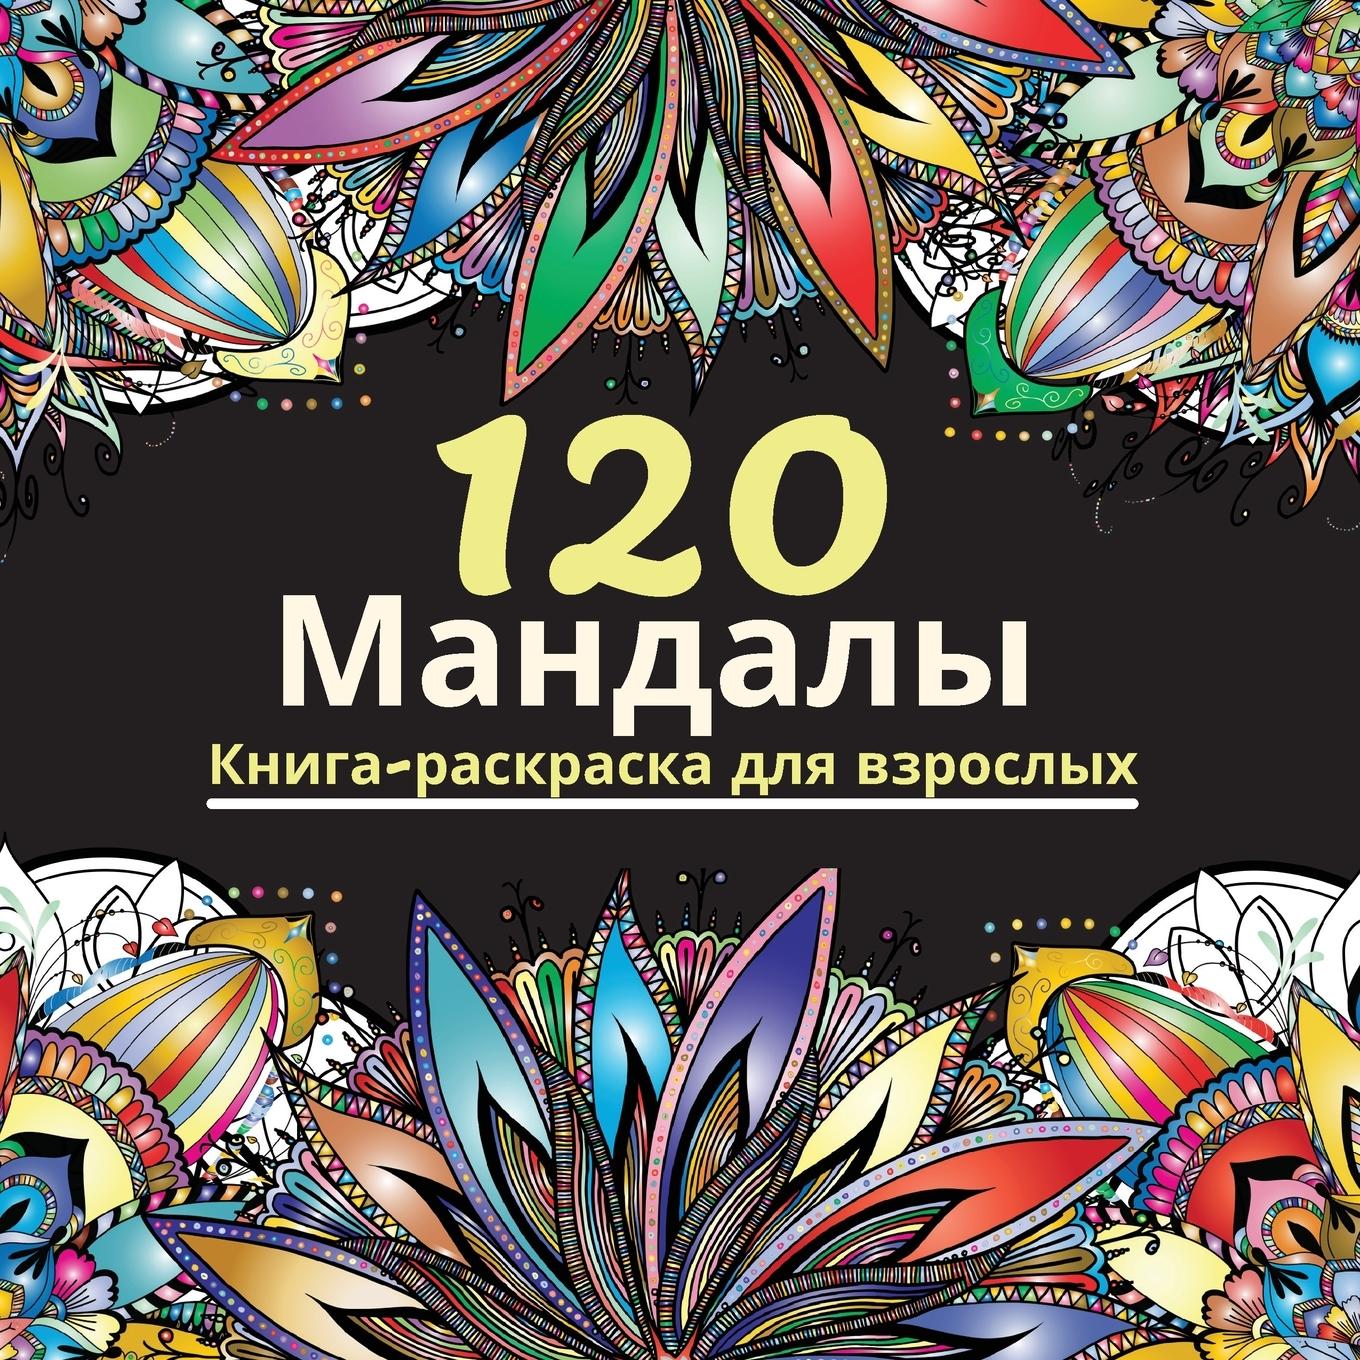 120 Mandalas - Lance Malcom, Lance Malcom